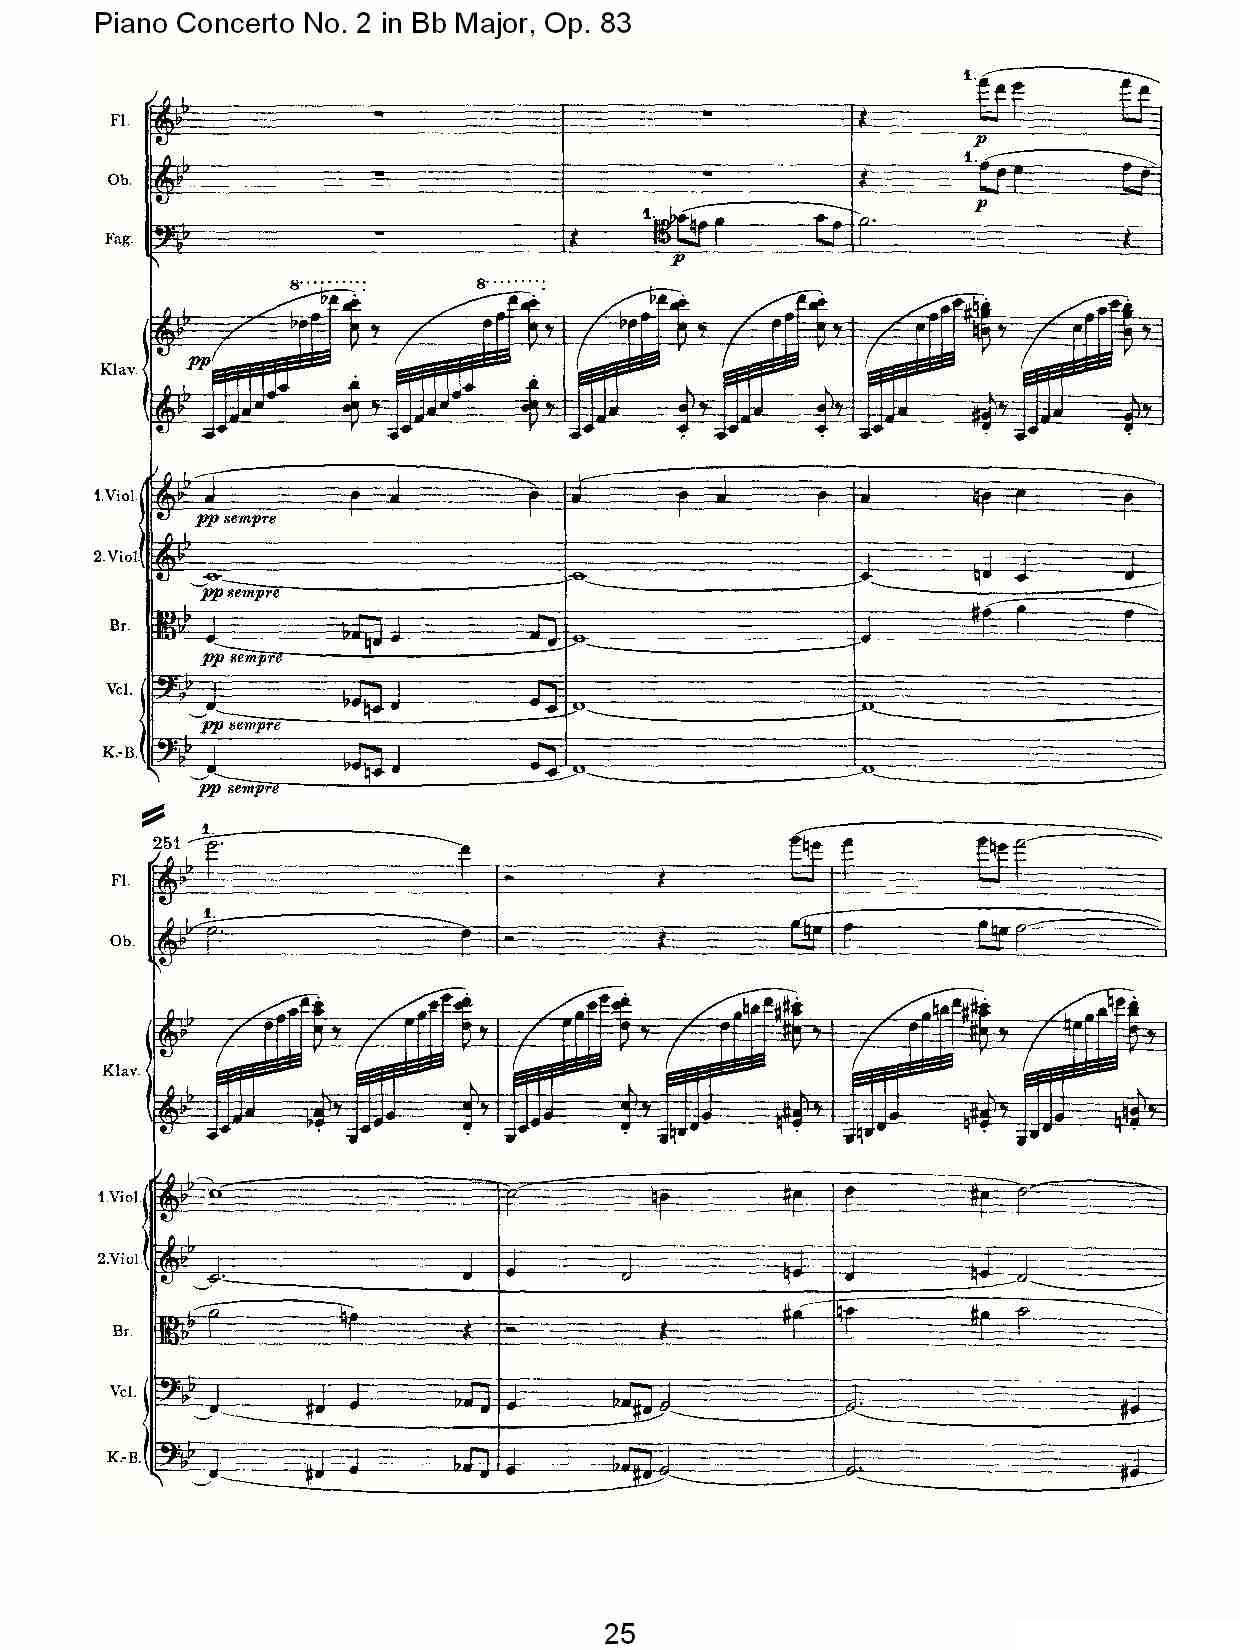 Bb大调钢琴第二协奏曲, Op.83第一乐章（一）钢琴曲谱（图26）